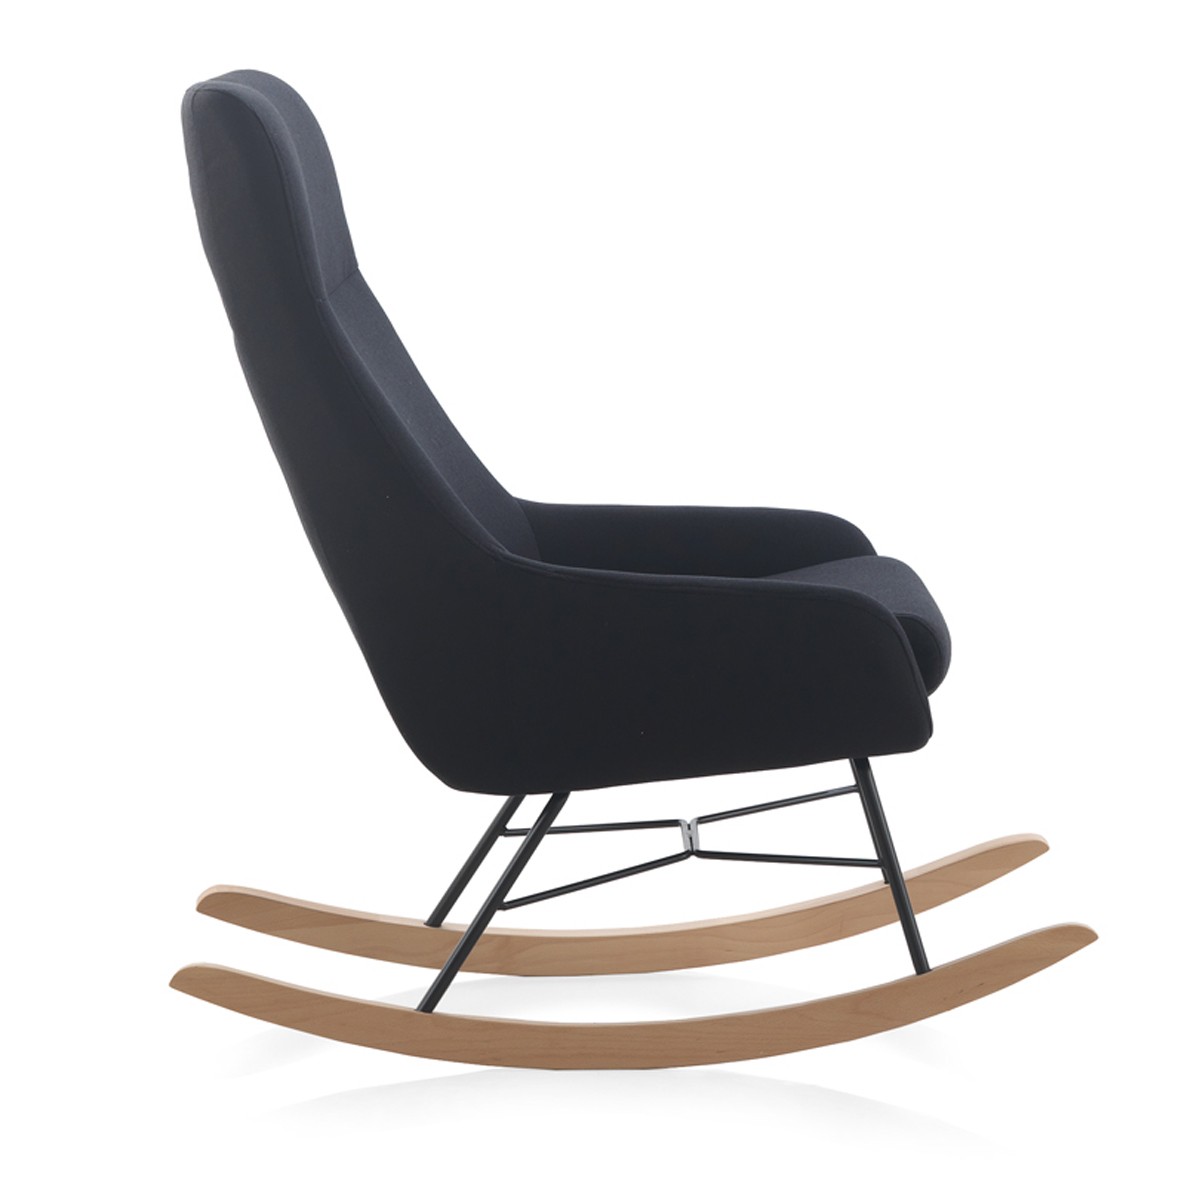 A cadeira de baloiço Ceuta é o lugar ideal para momentos de relaxamento e conforto. Uma cadeira que nos acolhe com o seu design moderno e a sua beleza única.